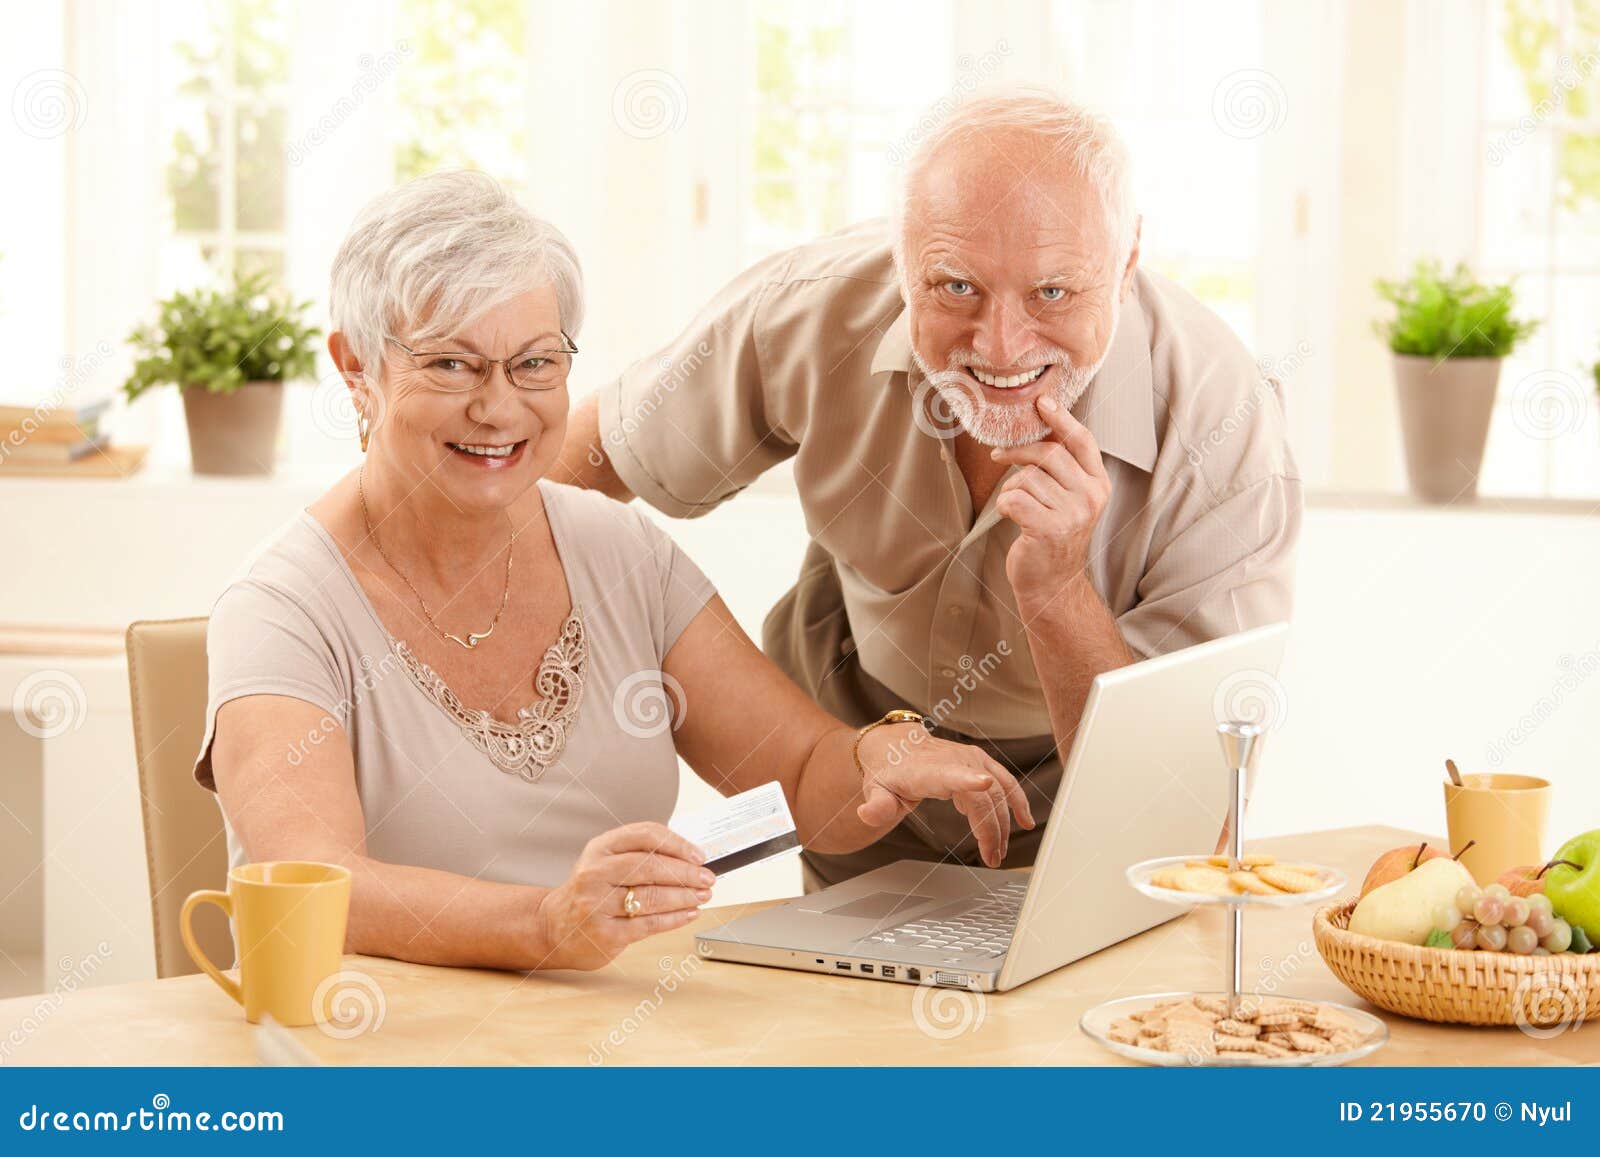 Портрет счастливой старой покупкы пар он-лайн. Портрет счастливых старых пар используя кредитную карточку и портативный компьютер, котор нужно ходить по магазинам он-лайн, женщины указывая на экран.